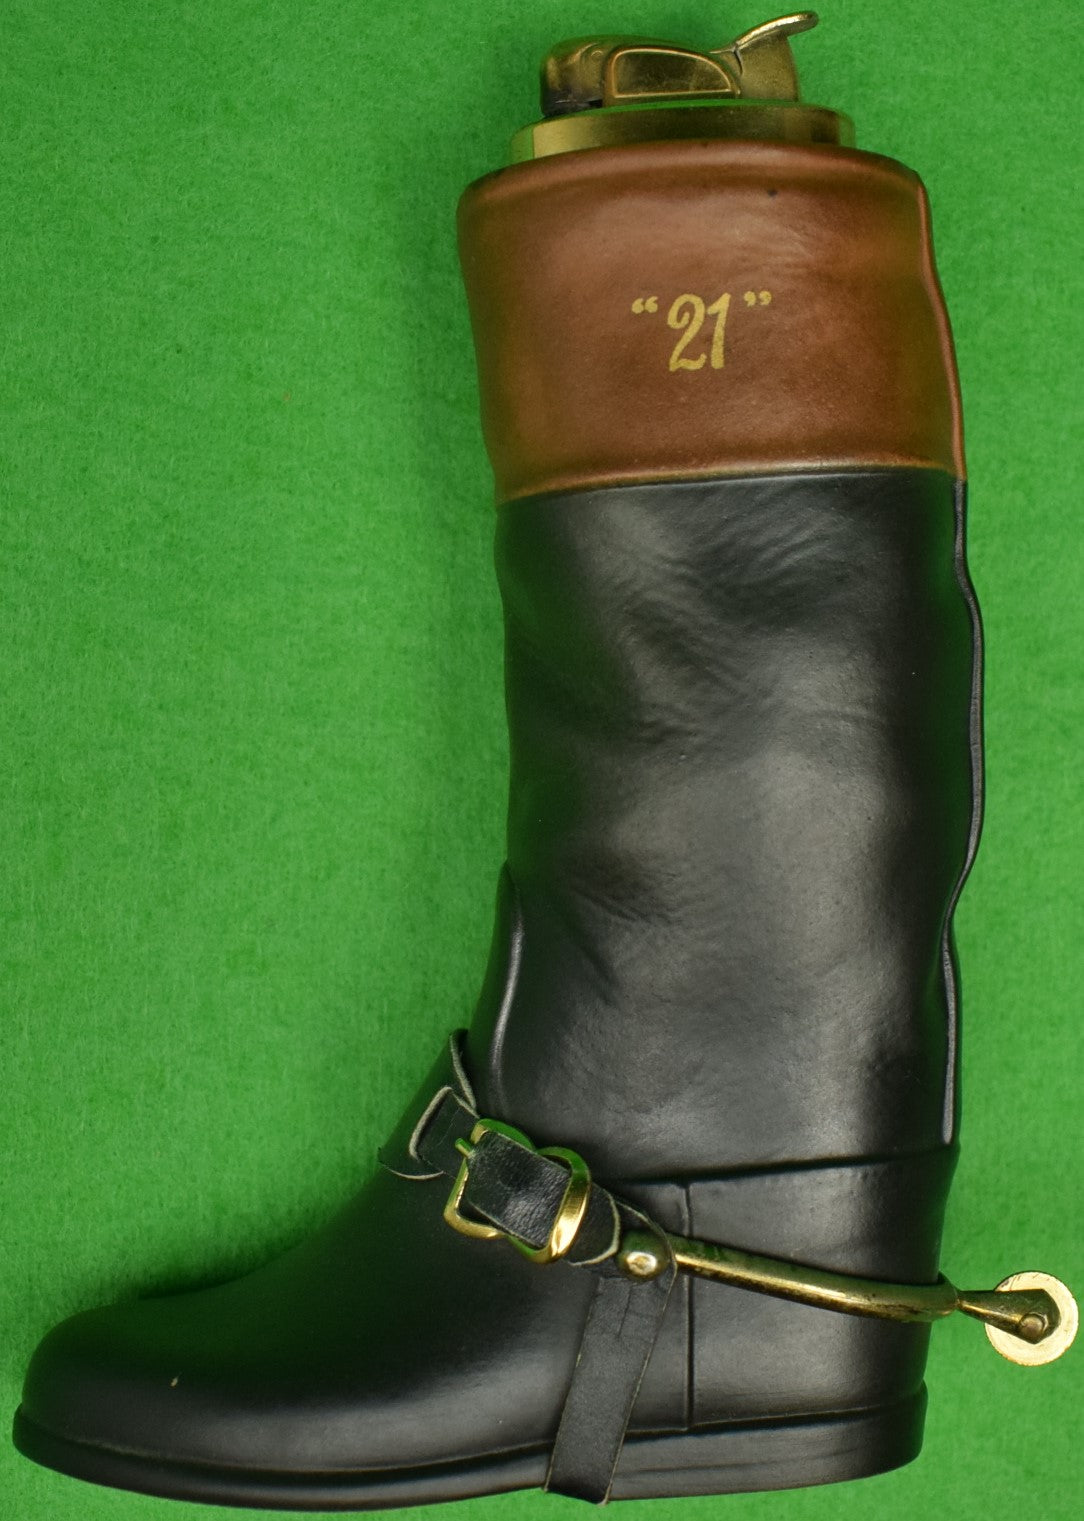 "21" Club Jockey Boot Evans Lighter